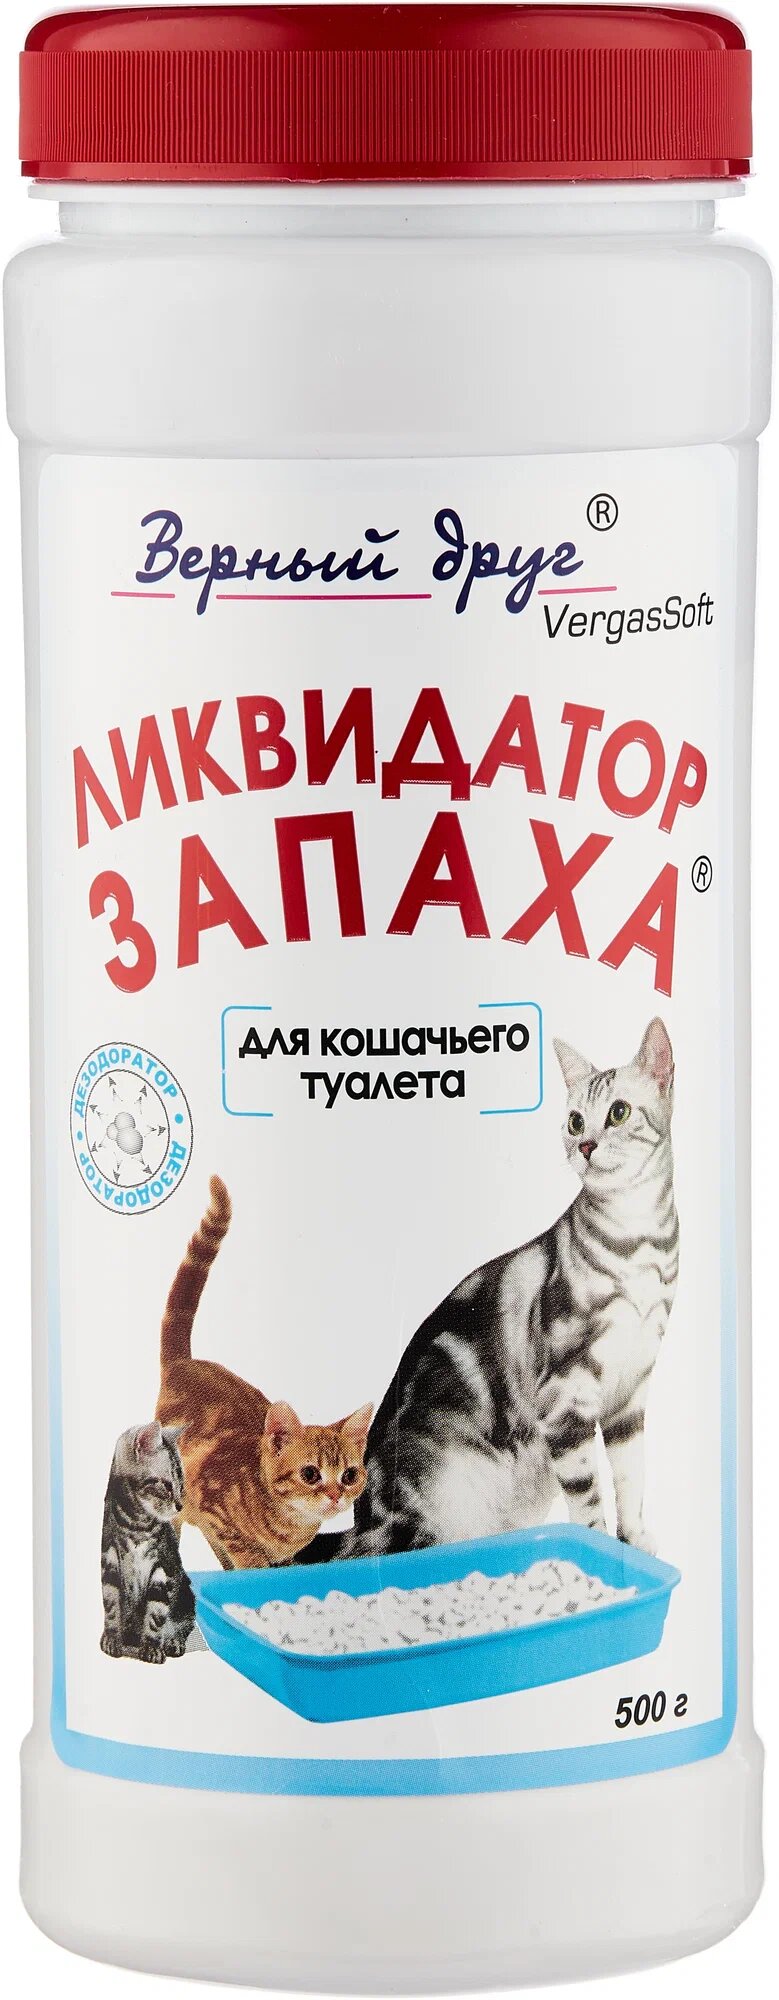 Верный Друг Ликвидатор запаха для кошачьих туалетов (порошок) 500 г